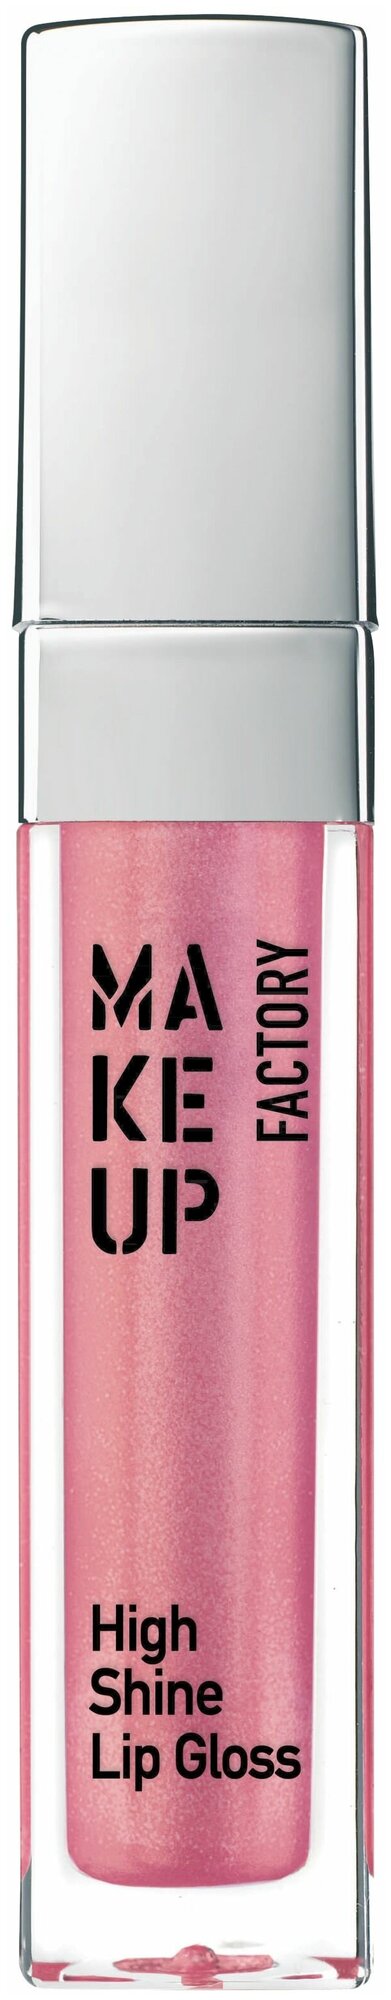 Make up Factory Блеск для губ с эффектом влажных губ High Shine Lip Gloss